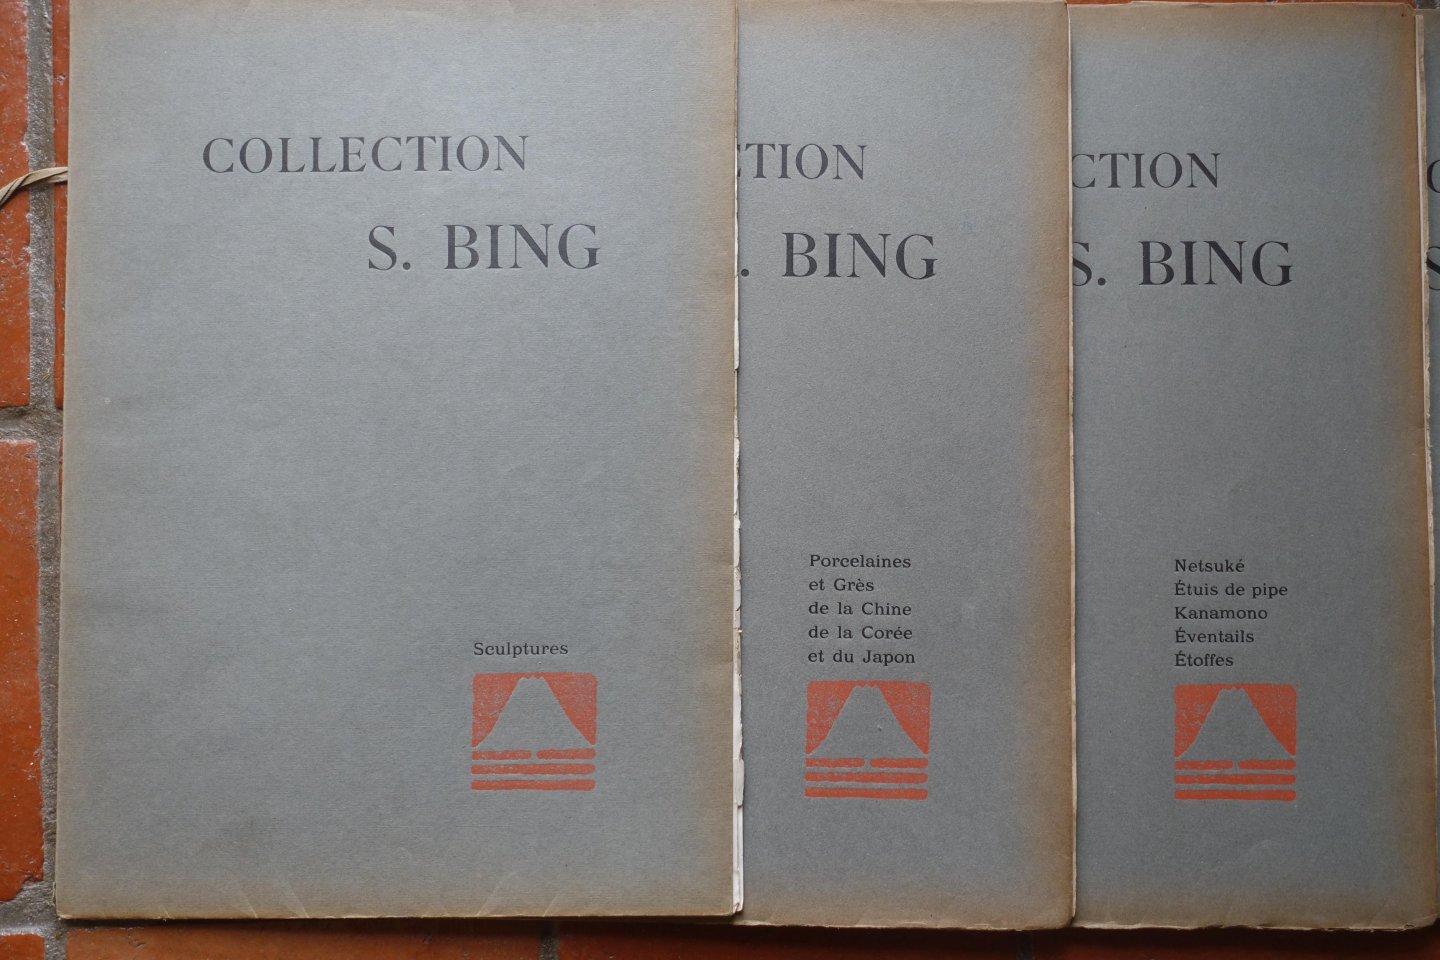 Bing, S. - Japan - China - Collection S. [Siegfried ] Bing. Objets d'art et peintures du Japon et de la Chine. Dont la vente aura lieu du Lundi 7 au Samedi 12 Mai 1906 inclus